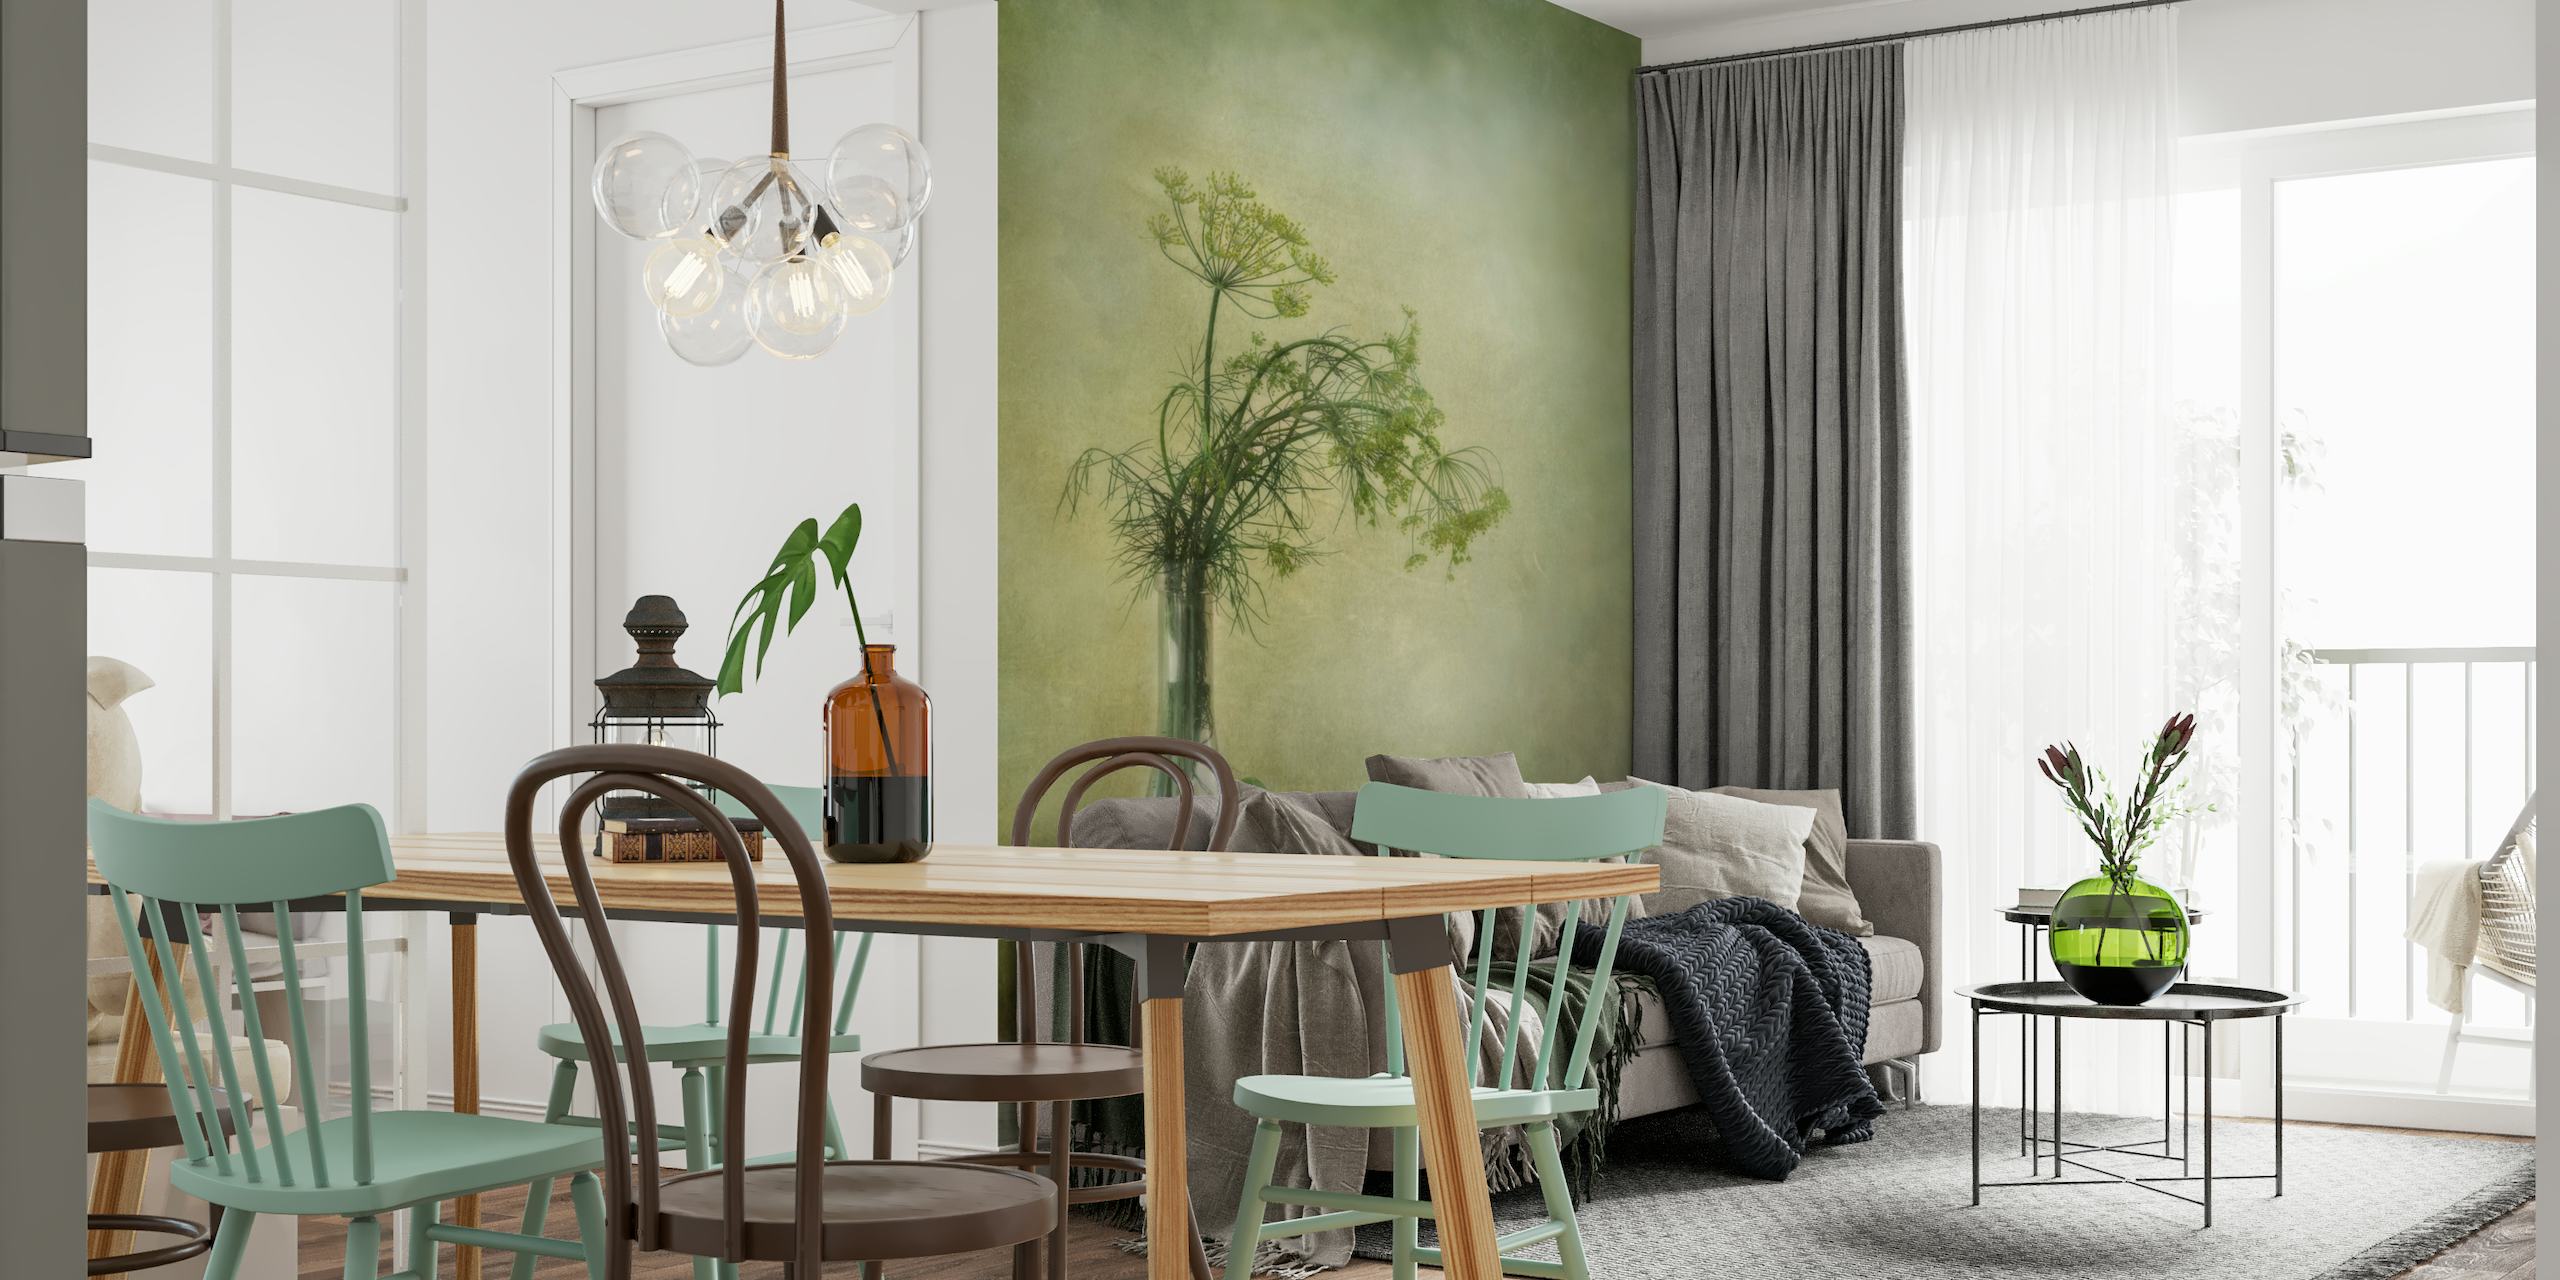 Seinämaalaus, jossa on maljakko tillillä ja kurkulla kuvioitua vihreää taustaa vasten